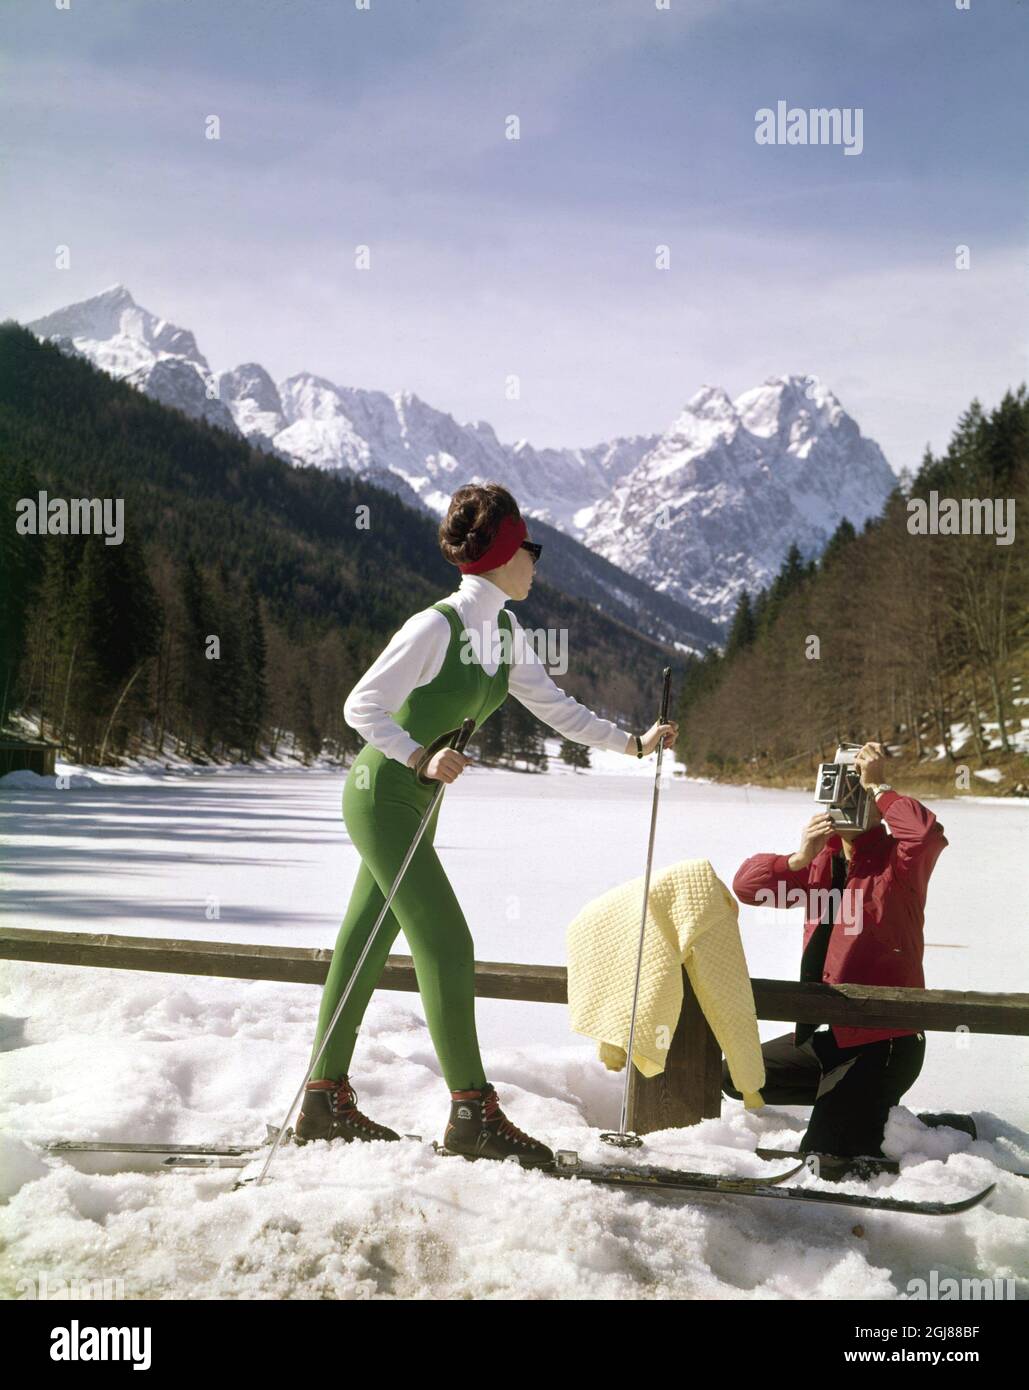 PhotoDate:196?-?-???? FICHIER photo prise de la femme à la mode ski années  1960. Tourisme dans la station de ski des Alpes Garmisch Partenkirchen au  bayern sites: ALLEMAGNE photo Date: 196? -? -? ****